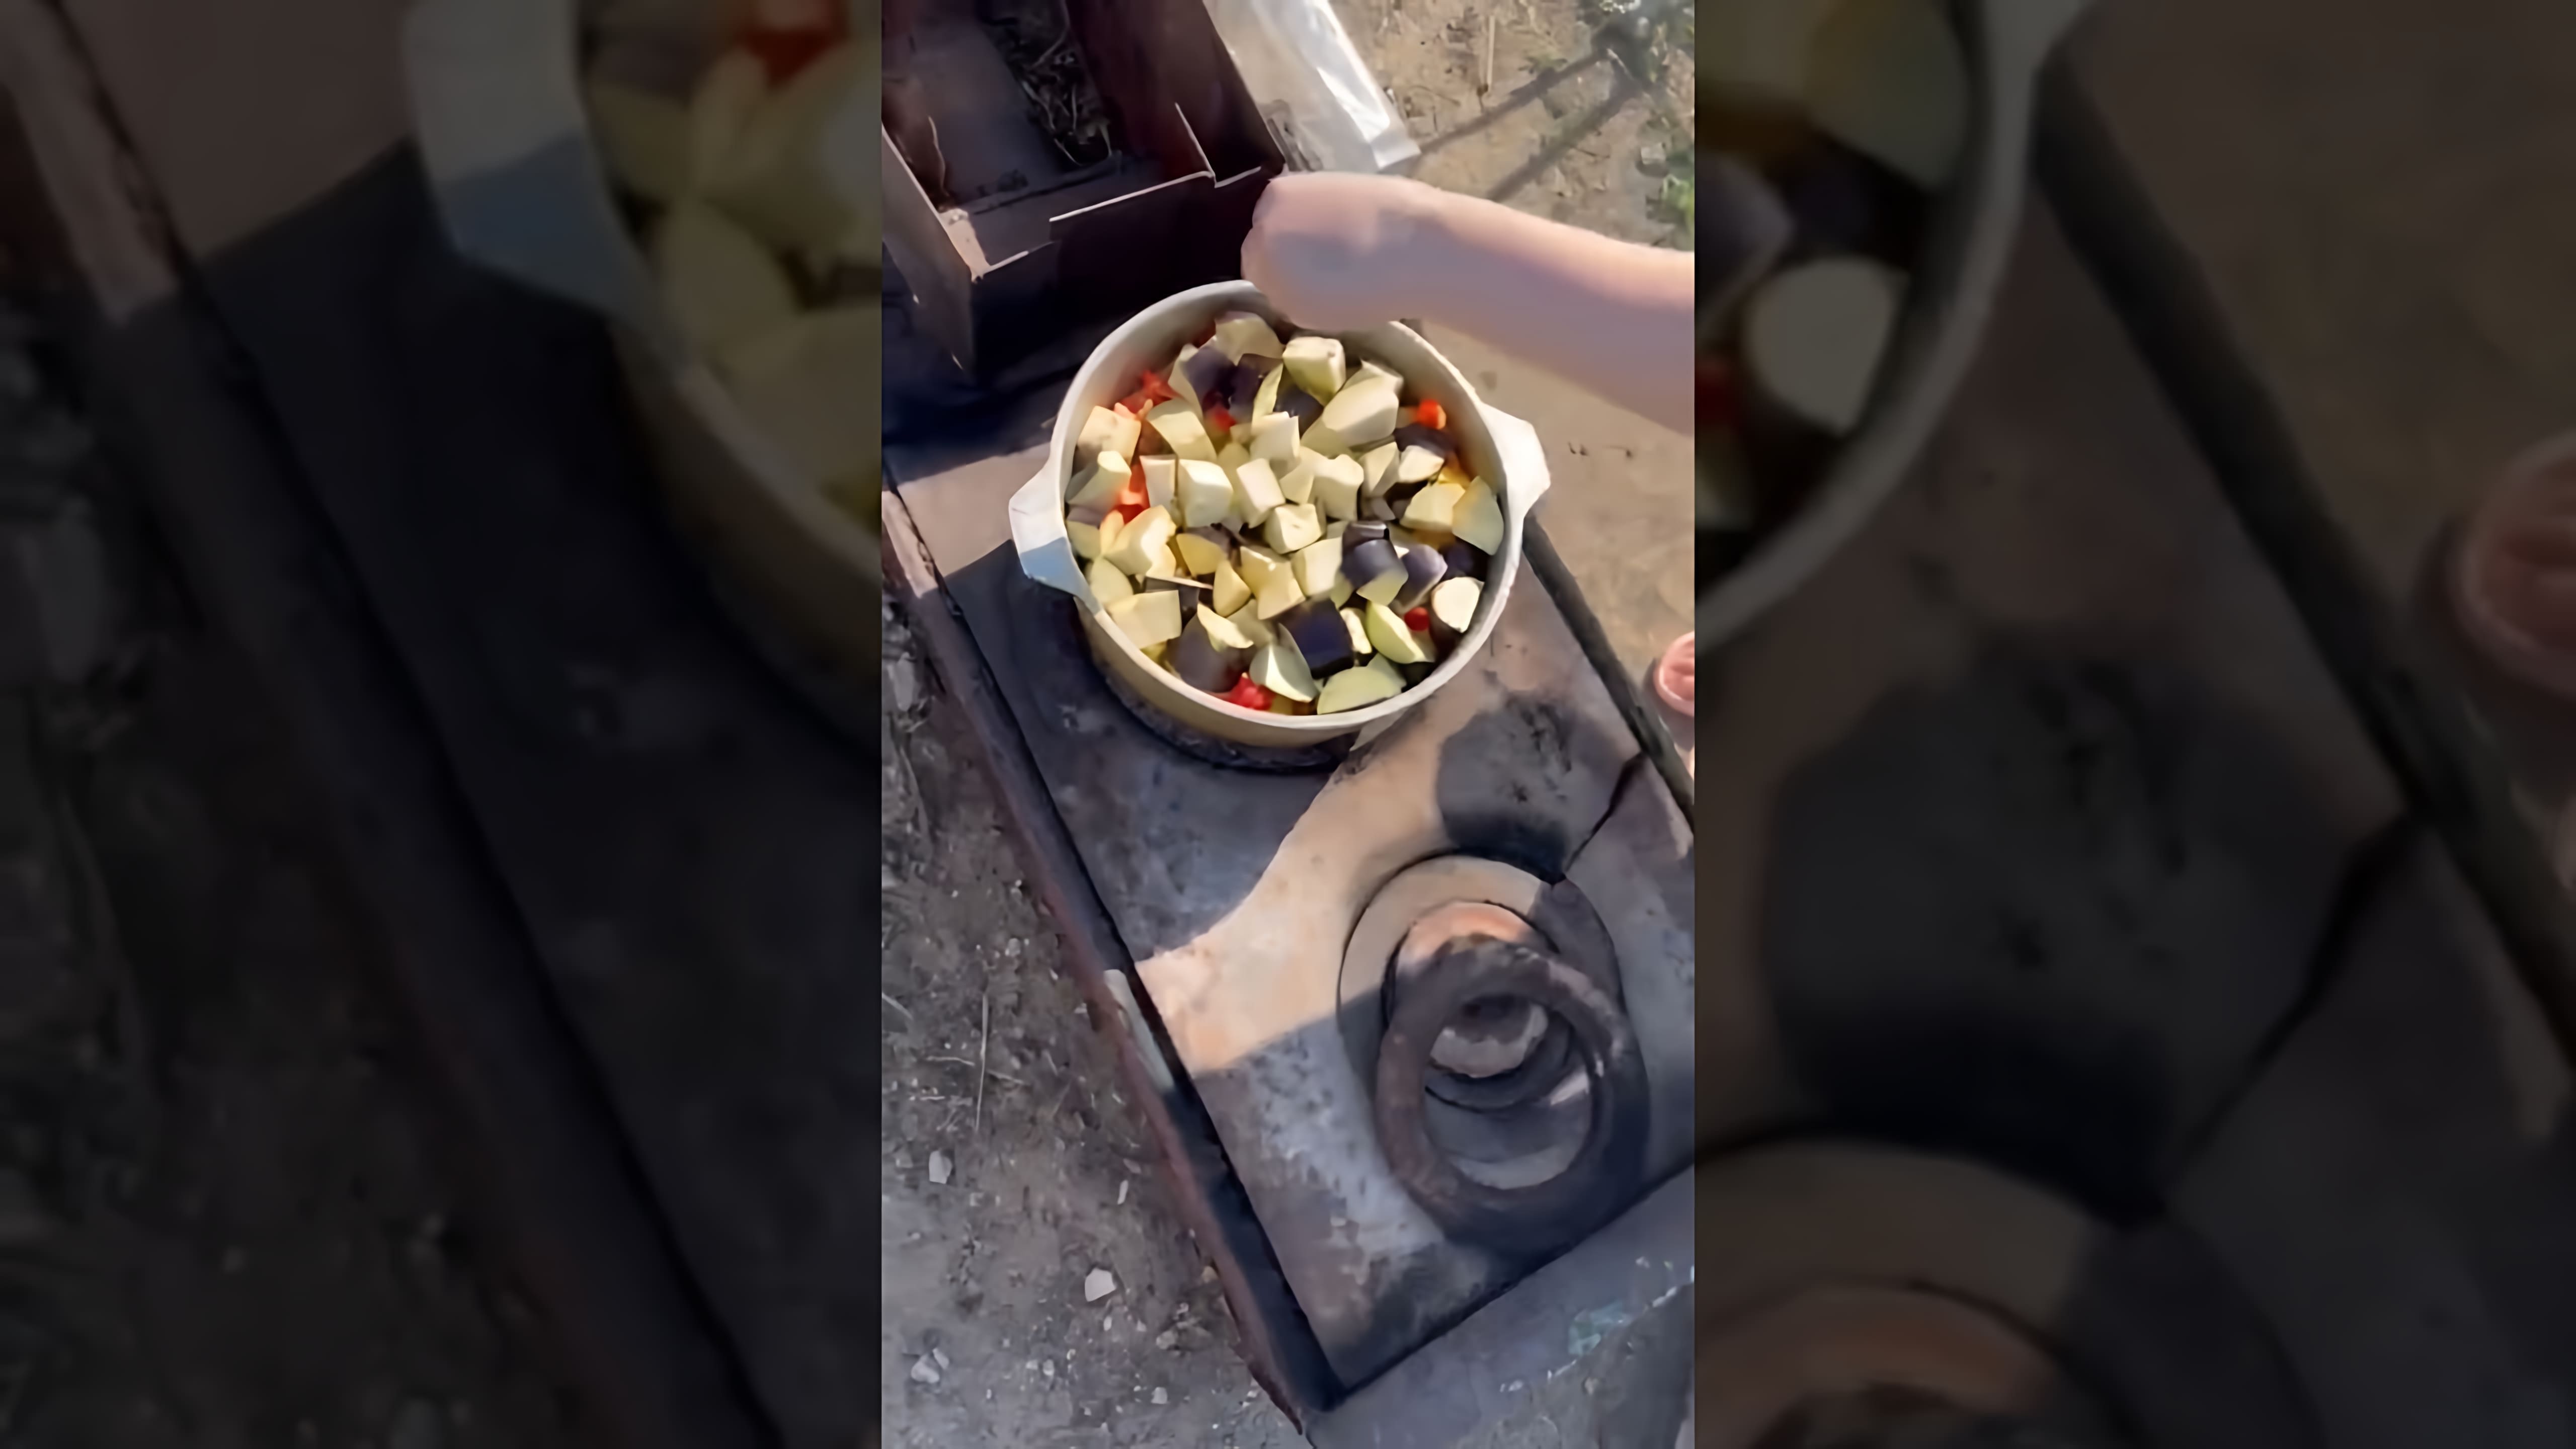 ГРУЗИНСКОЕ БЛЮДО ЧАНАХИ ПРИГОТОВИТ КАЖДЫЙ

В этом видео-ролике я покажу, как приготовить грузинское блюдо чанахи